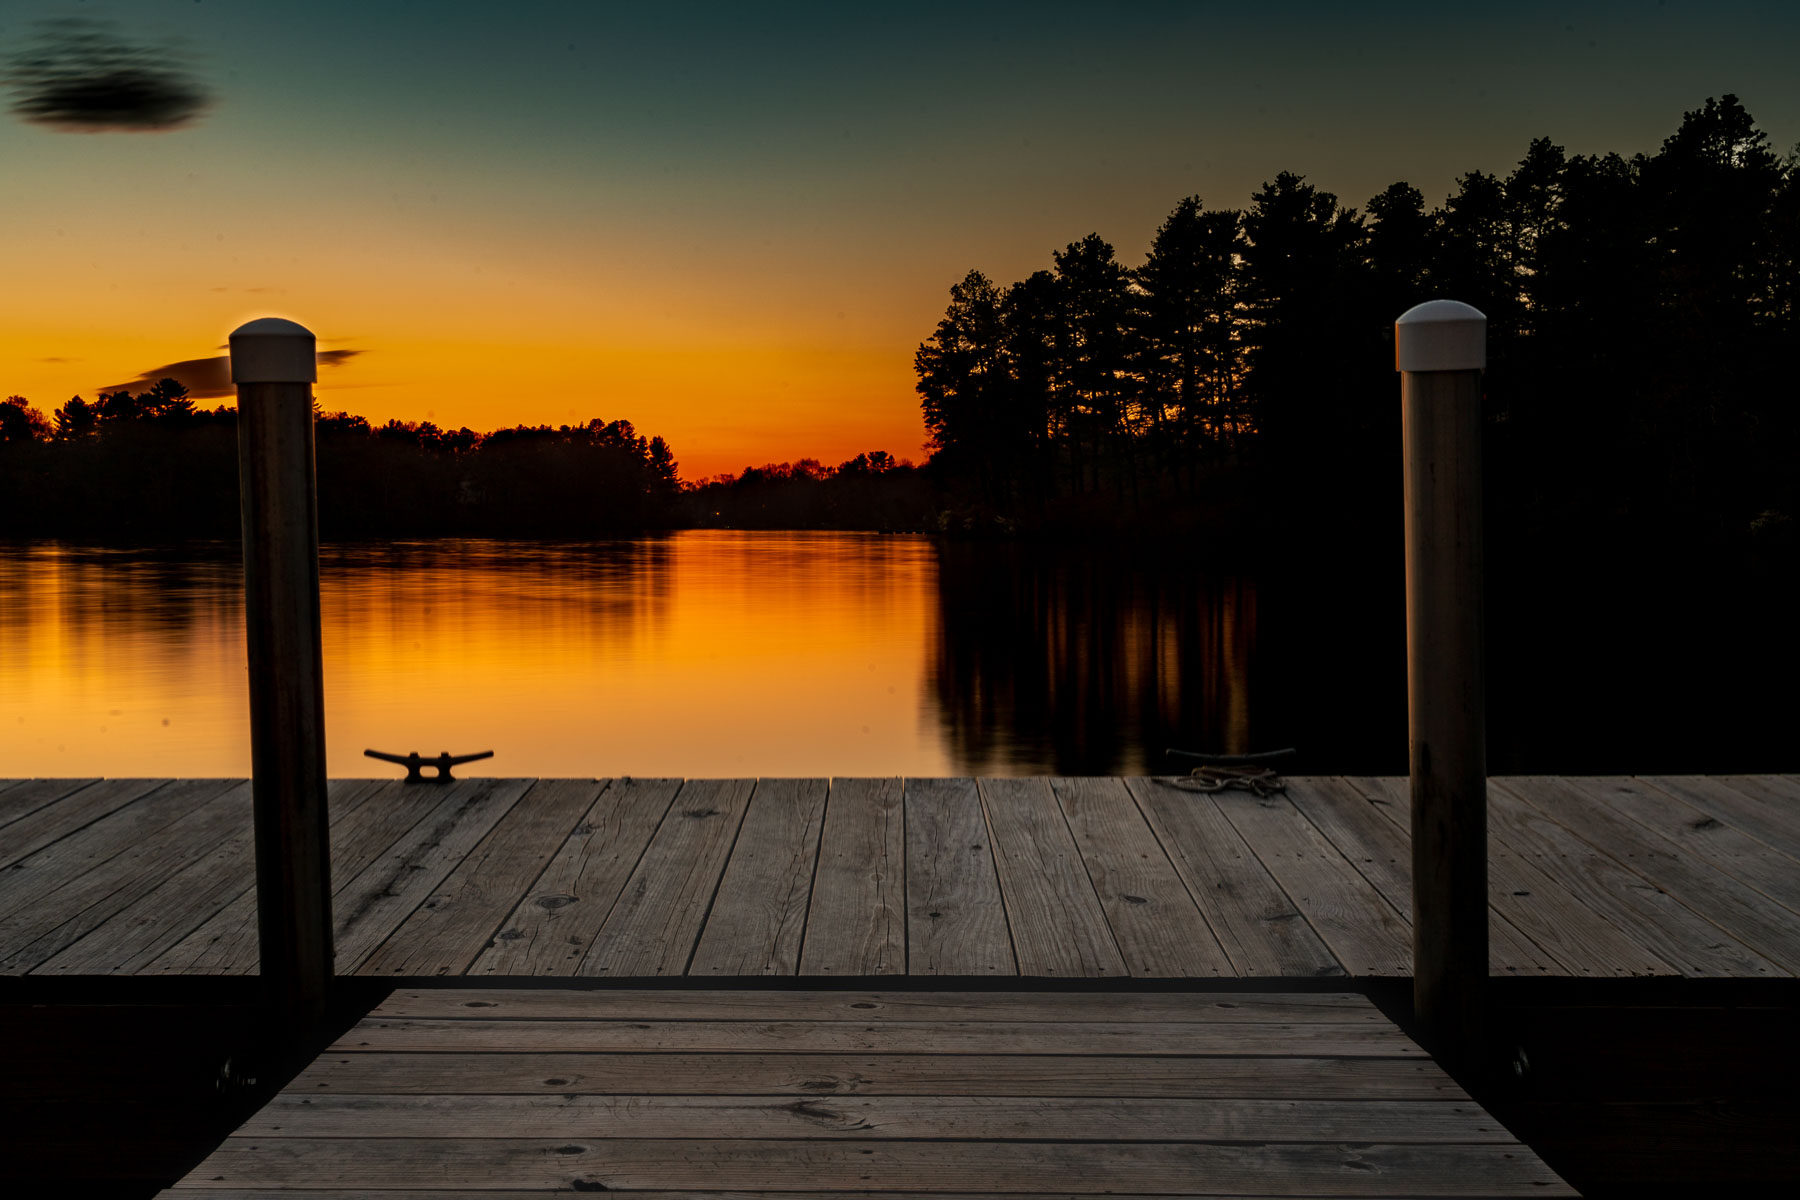 Sunset on a lake.